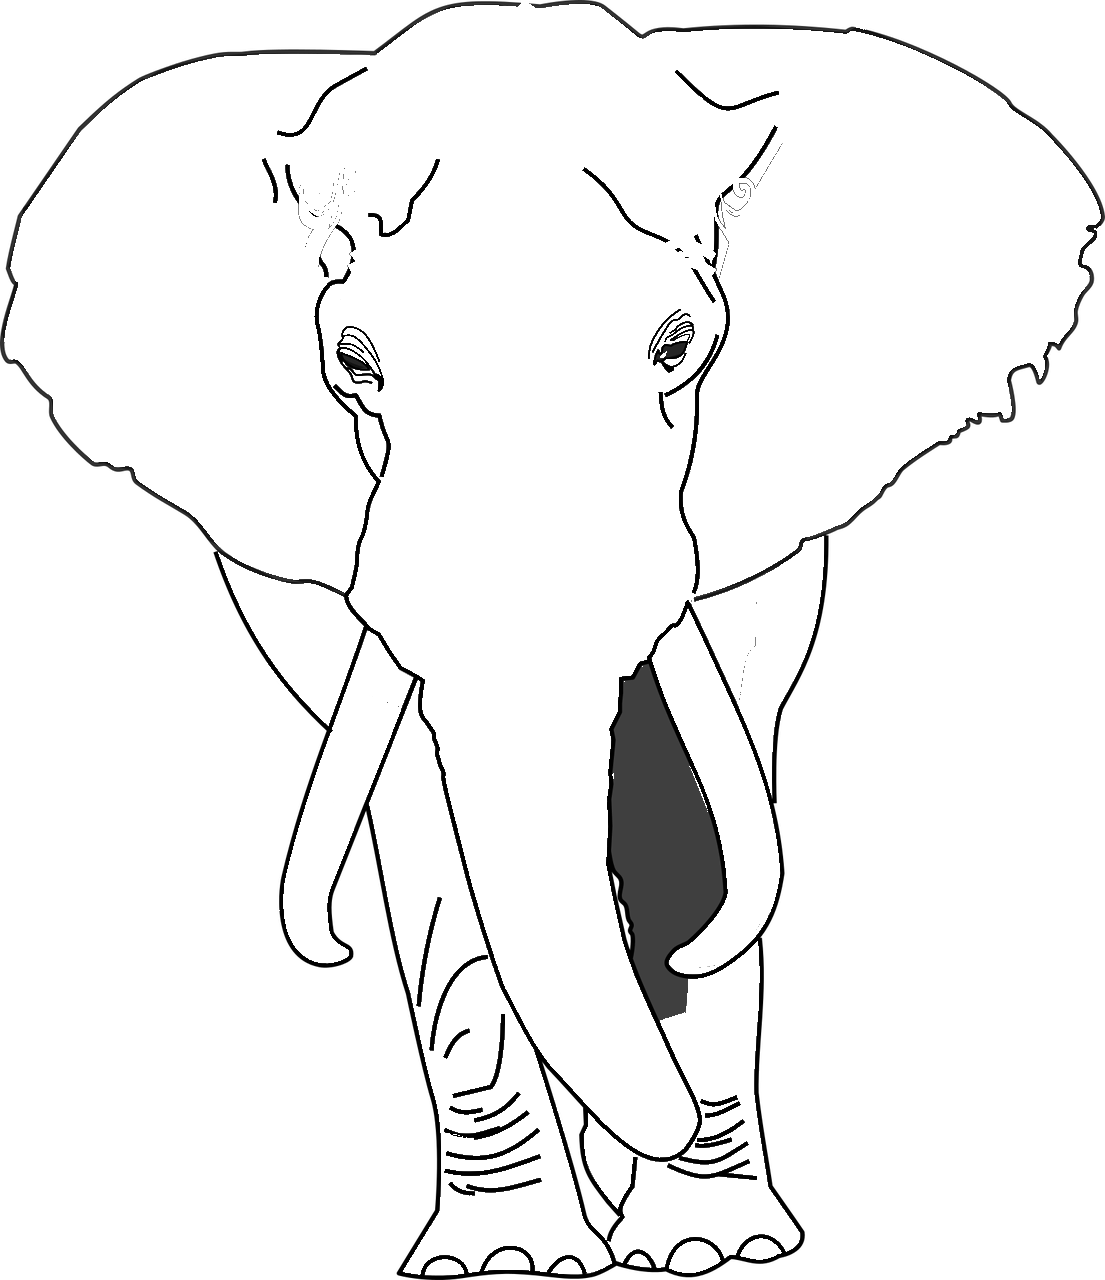 Dibujo de elefante africano realista para colorear